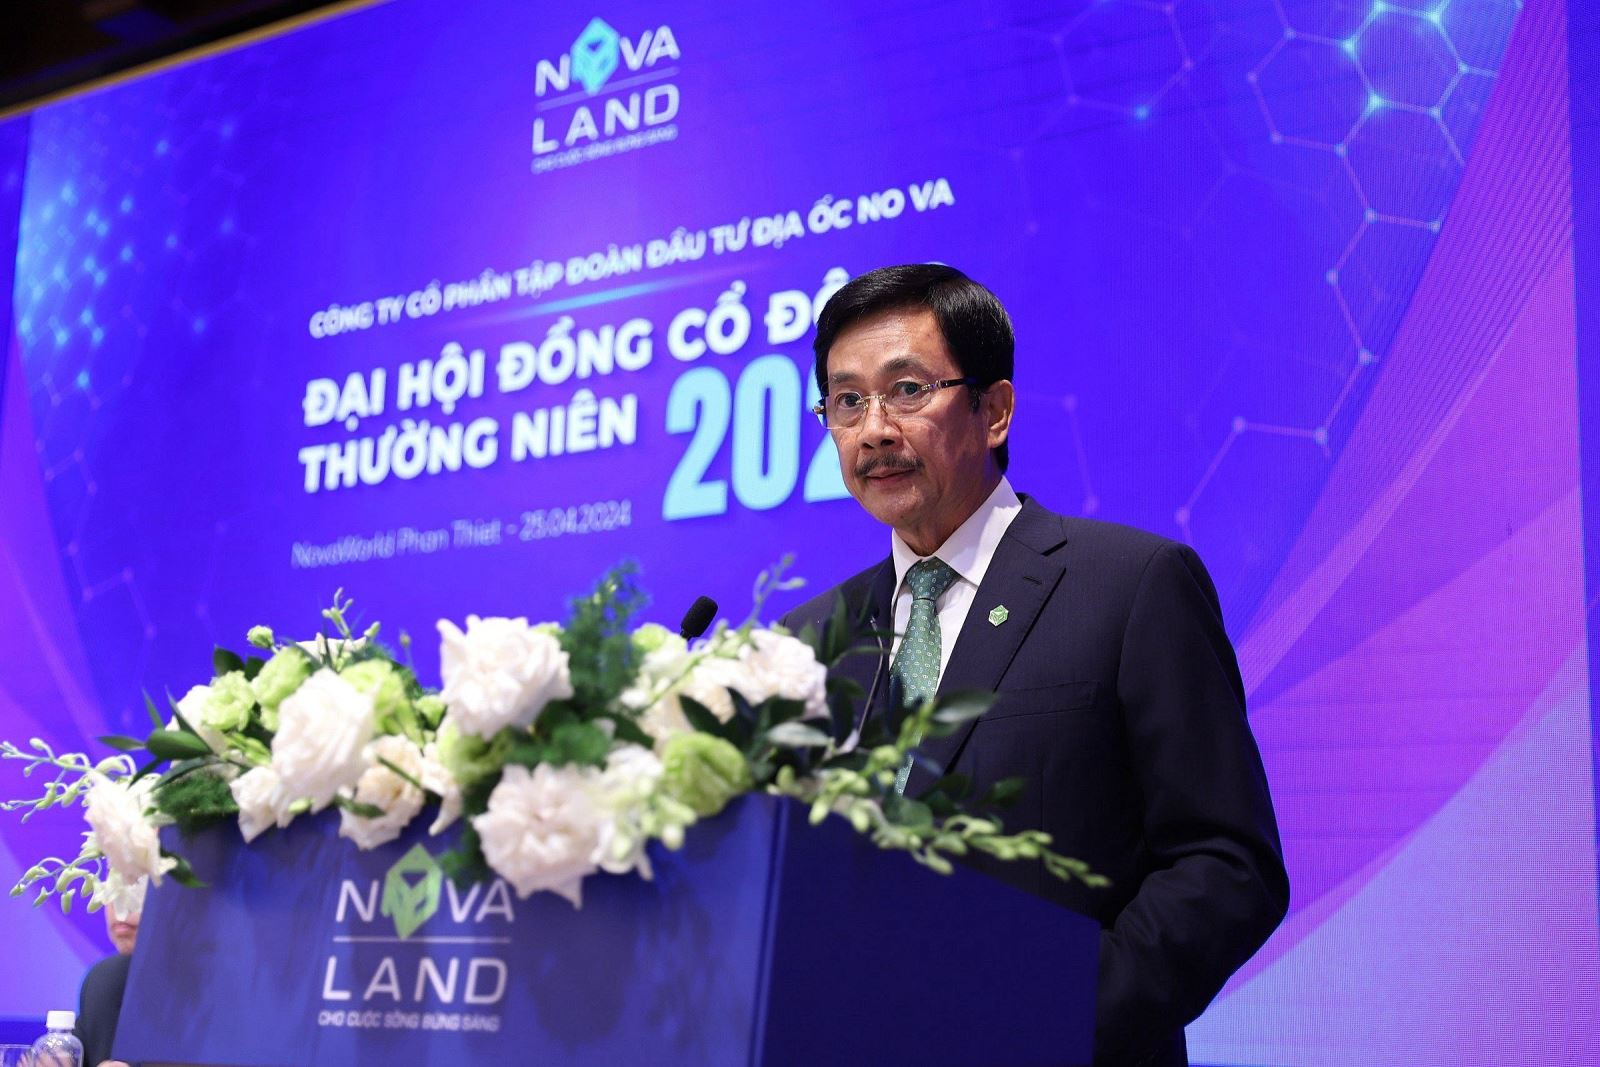 NVL: Ông Bùi Thành Nhơn nói về tình hình mới của Novaland